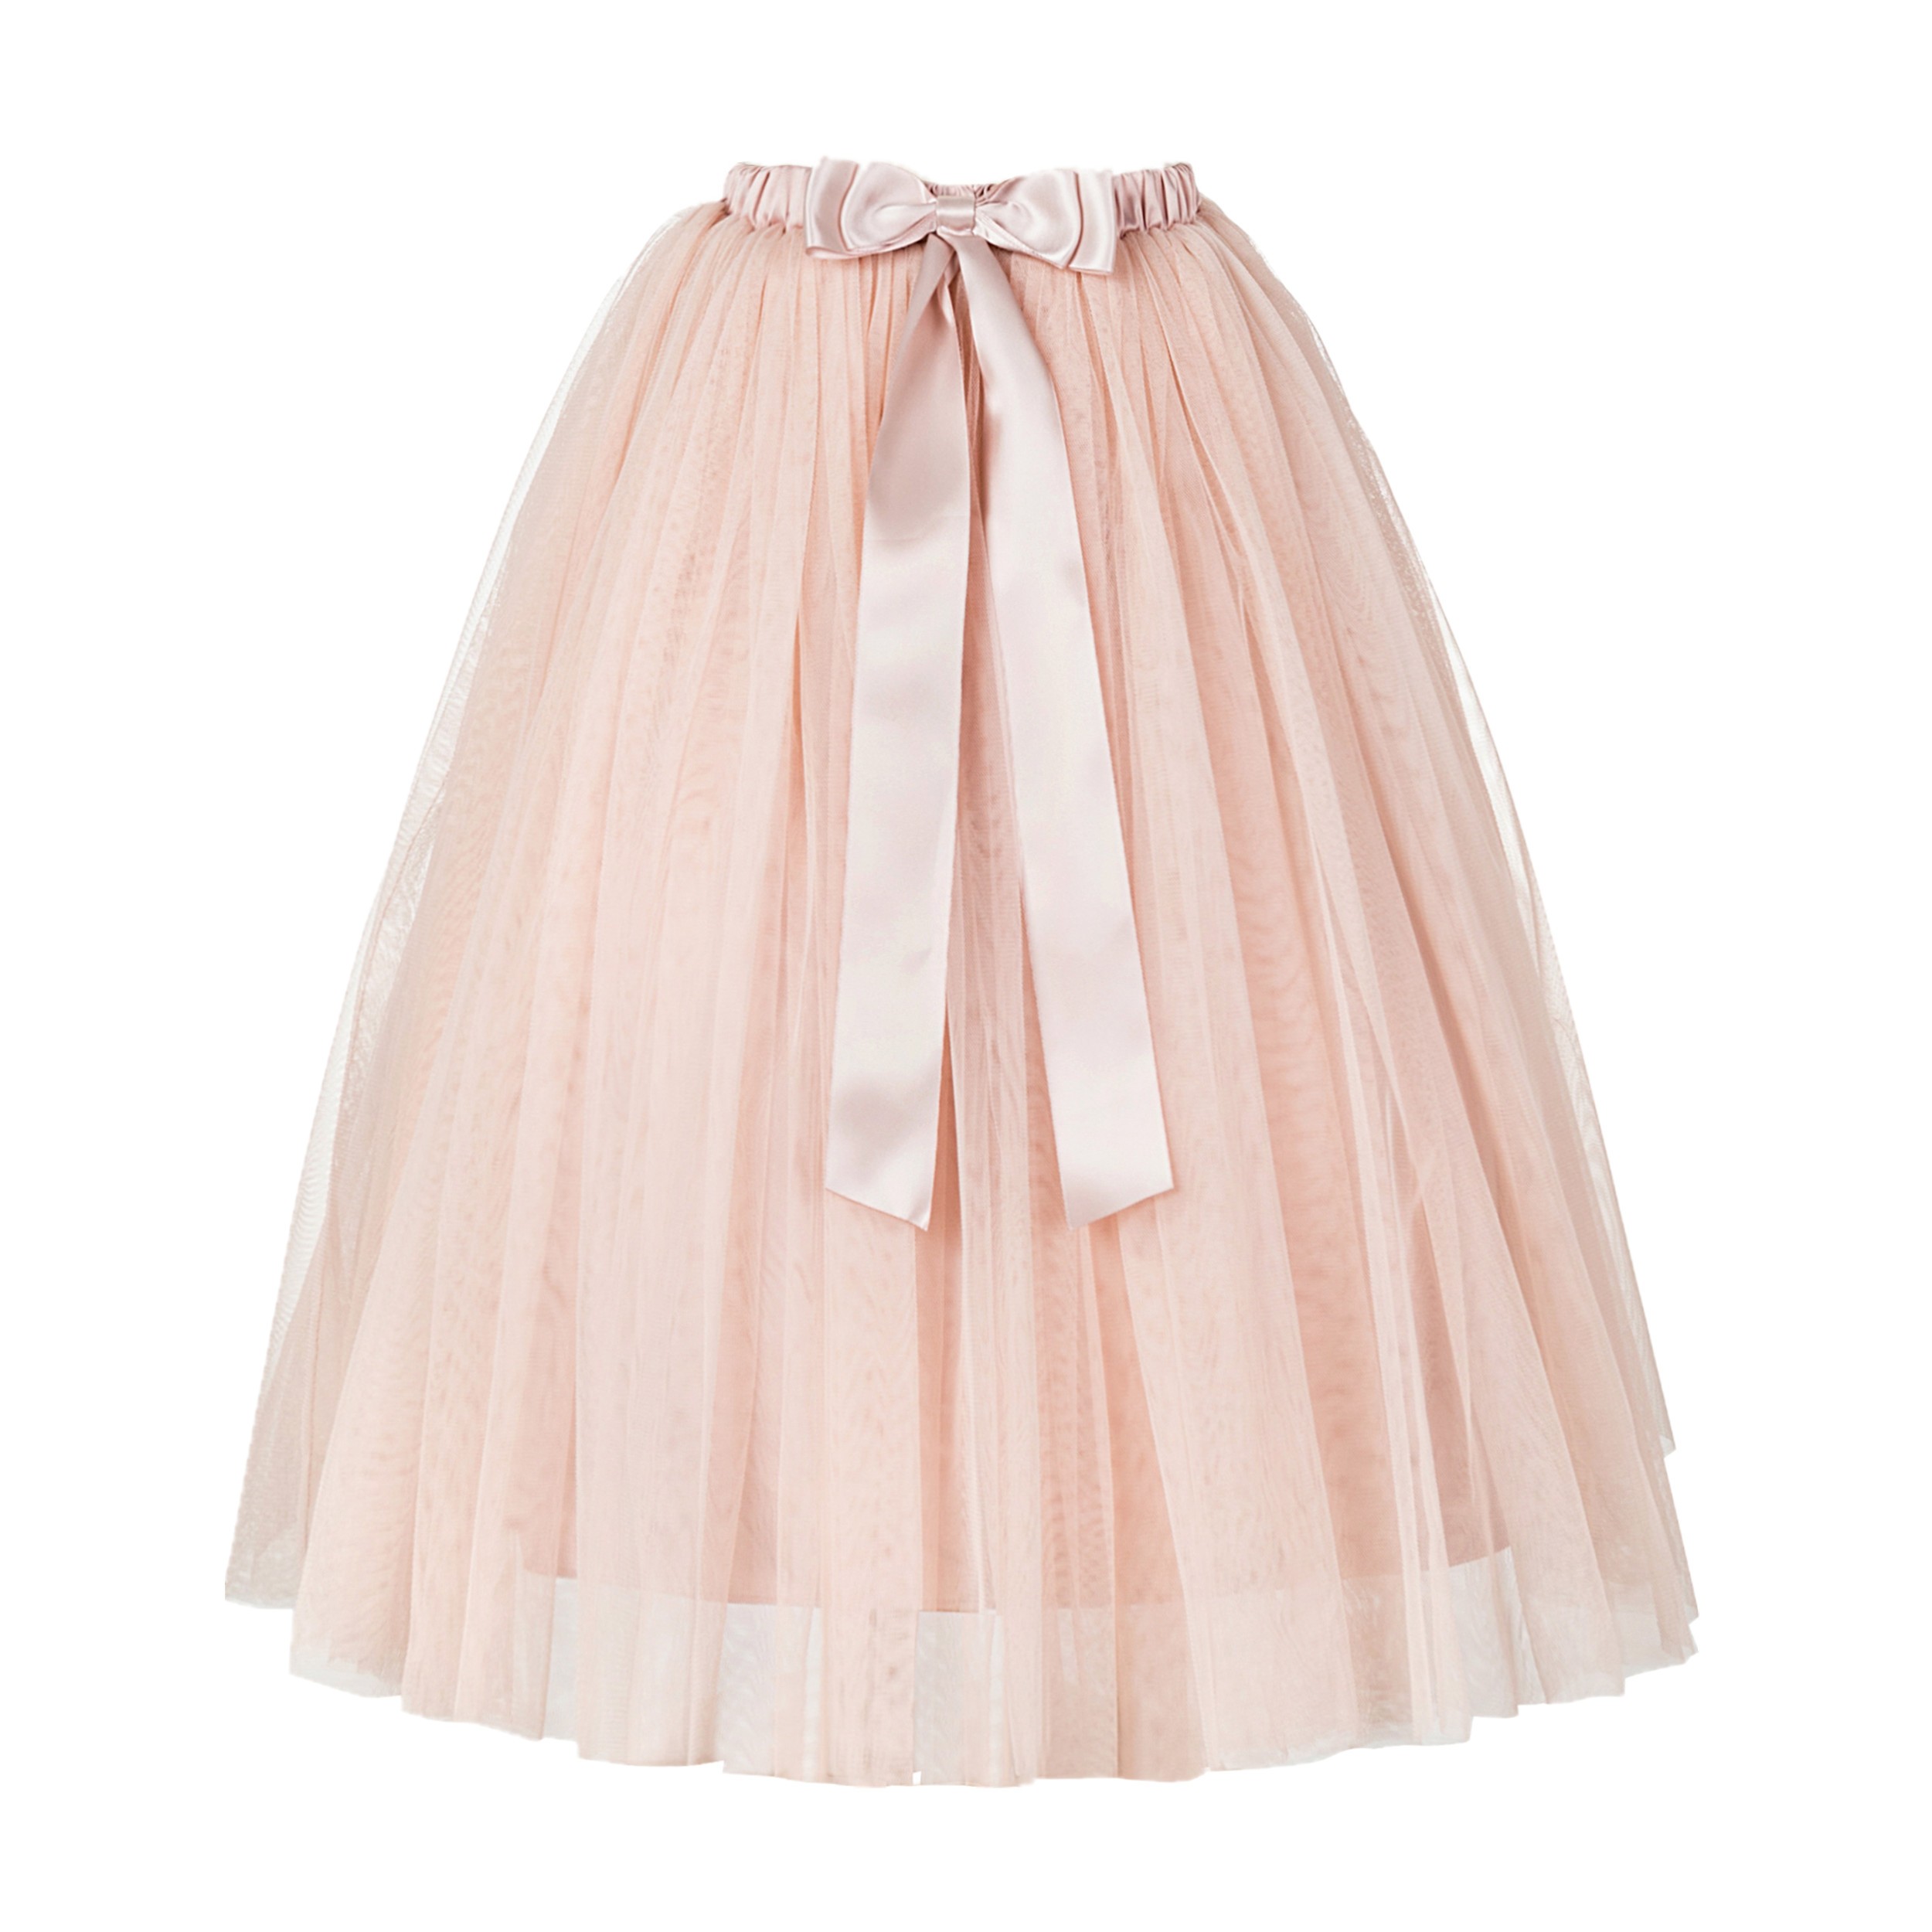 Blush Pink Flower Girls Tulle Skirt Tutu Skirt Tulle Maxi Skirts